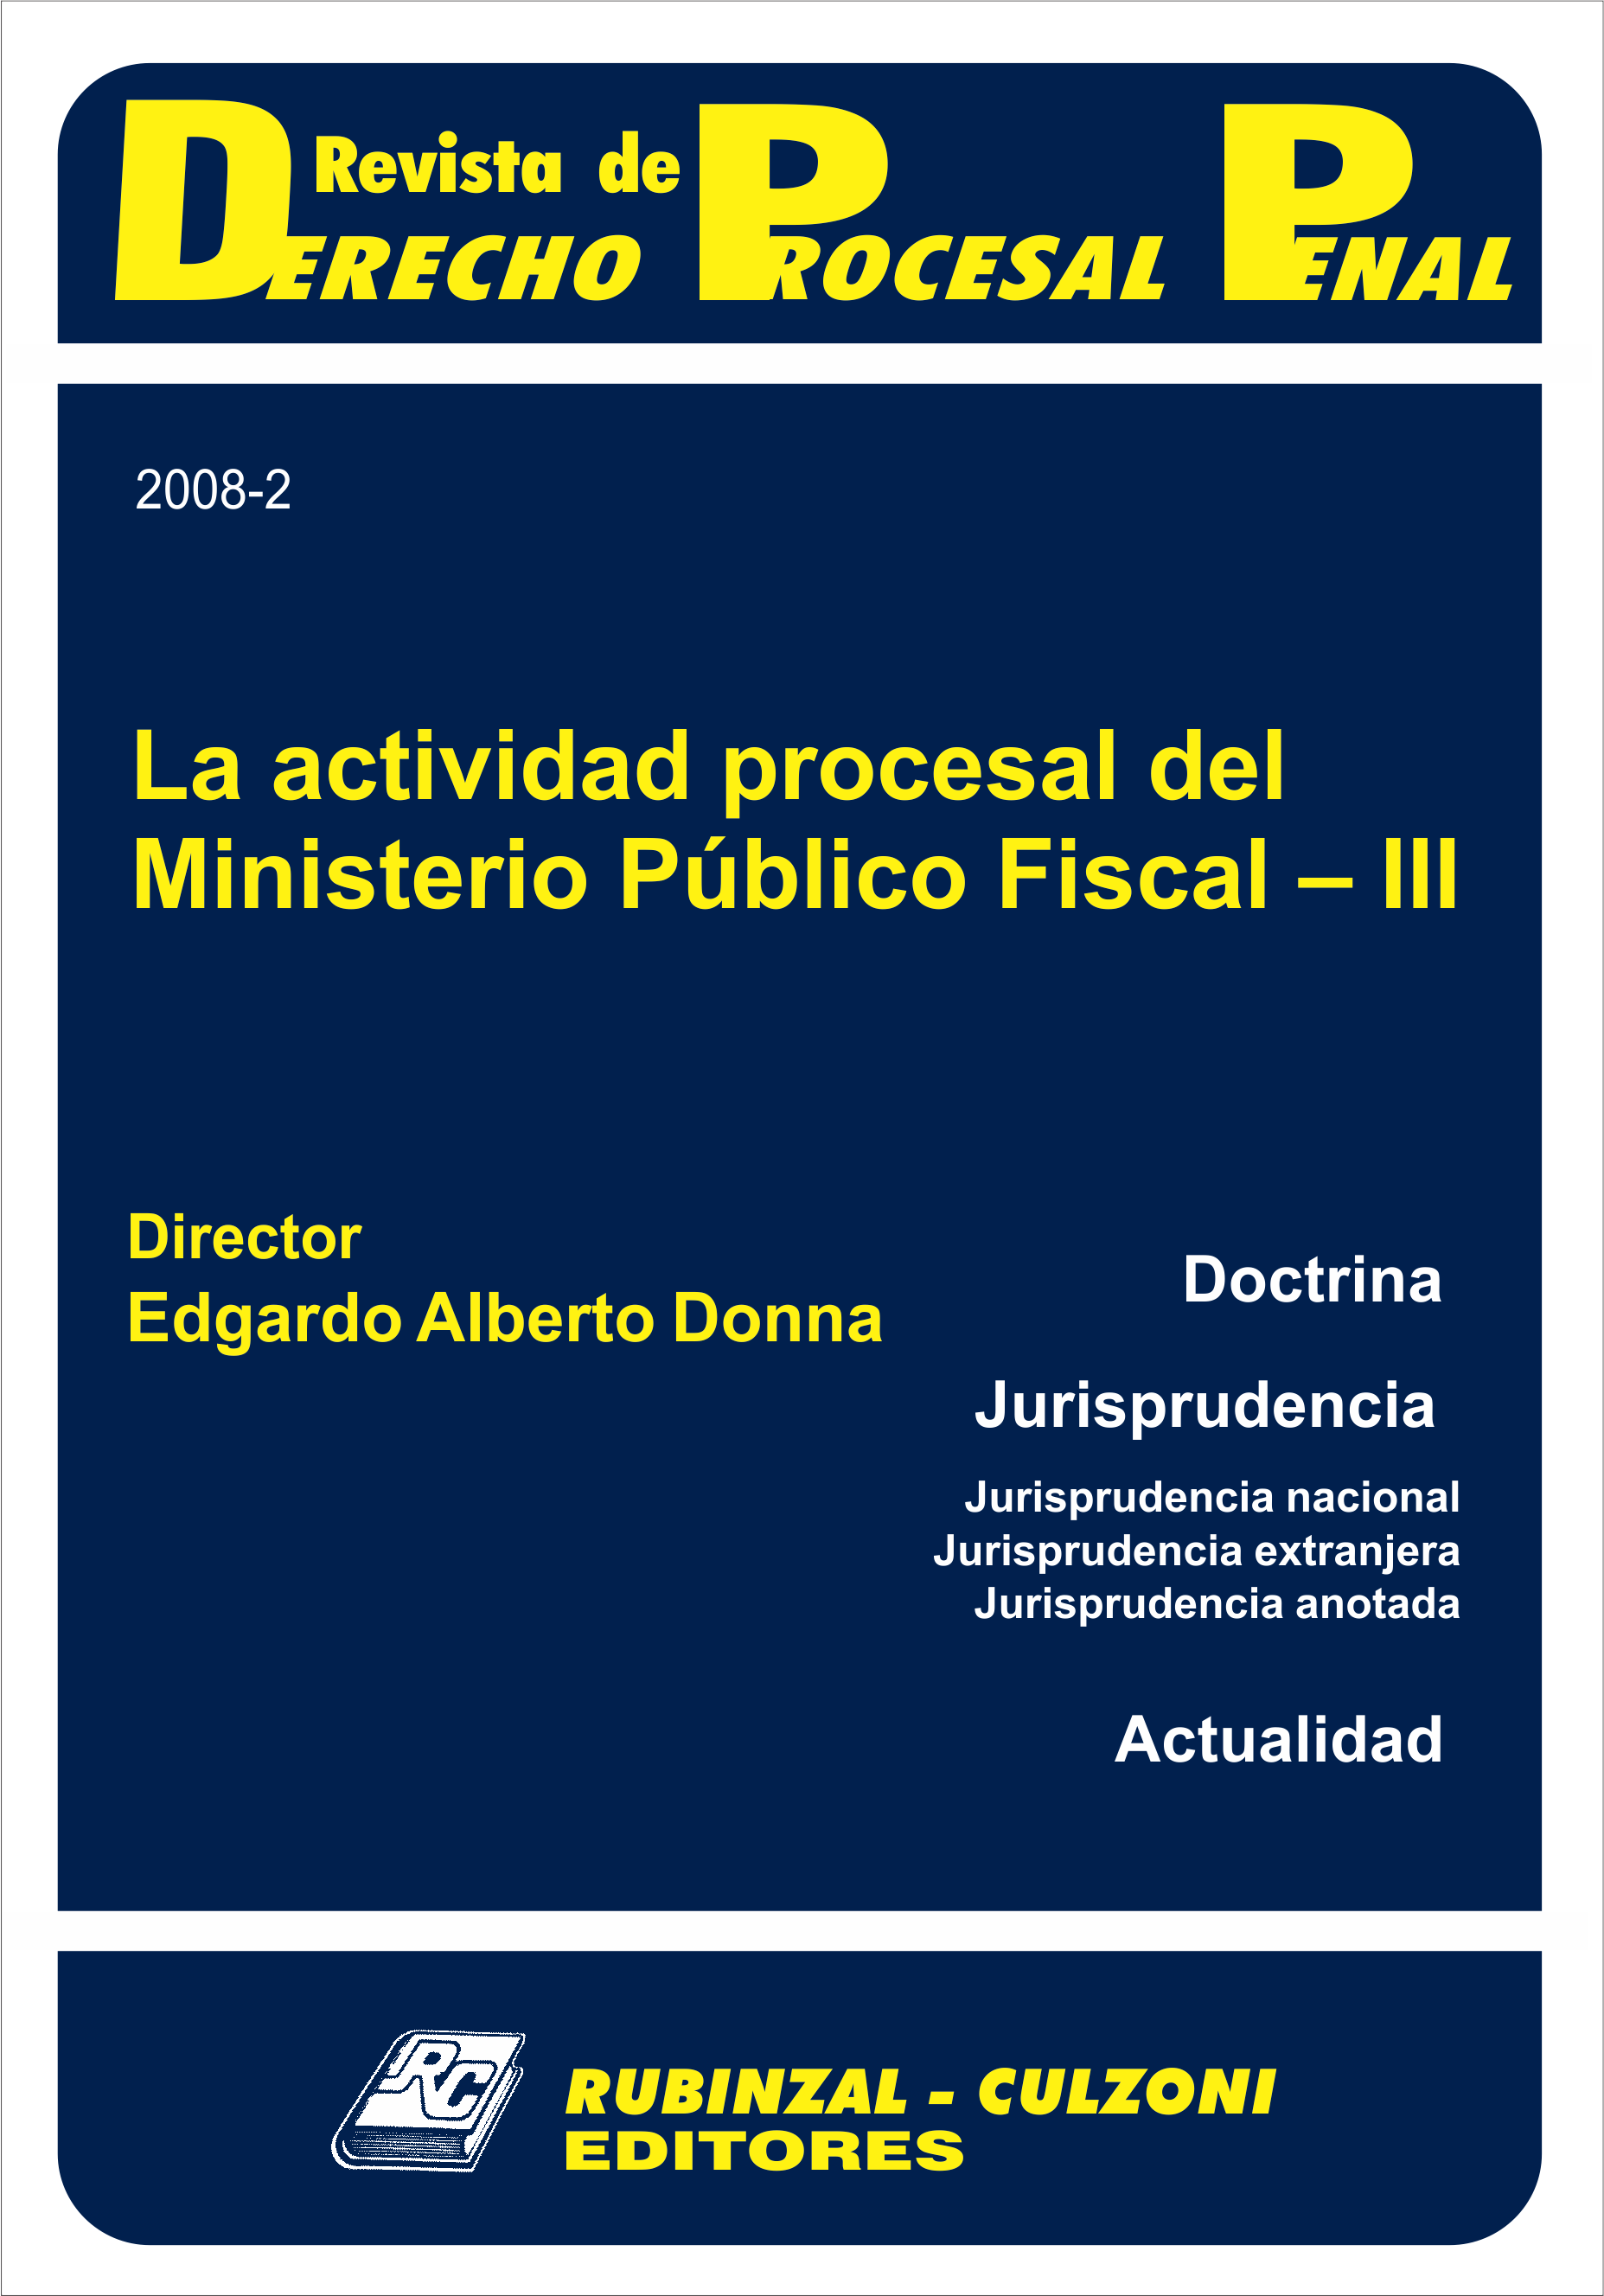 Revista de Derecho Procesal Penal - La actividad procesal del Ministerio Público Fiscal - III.